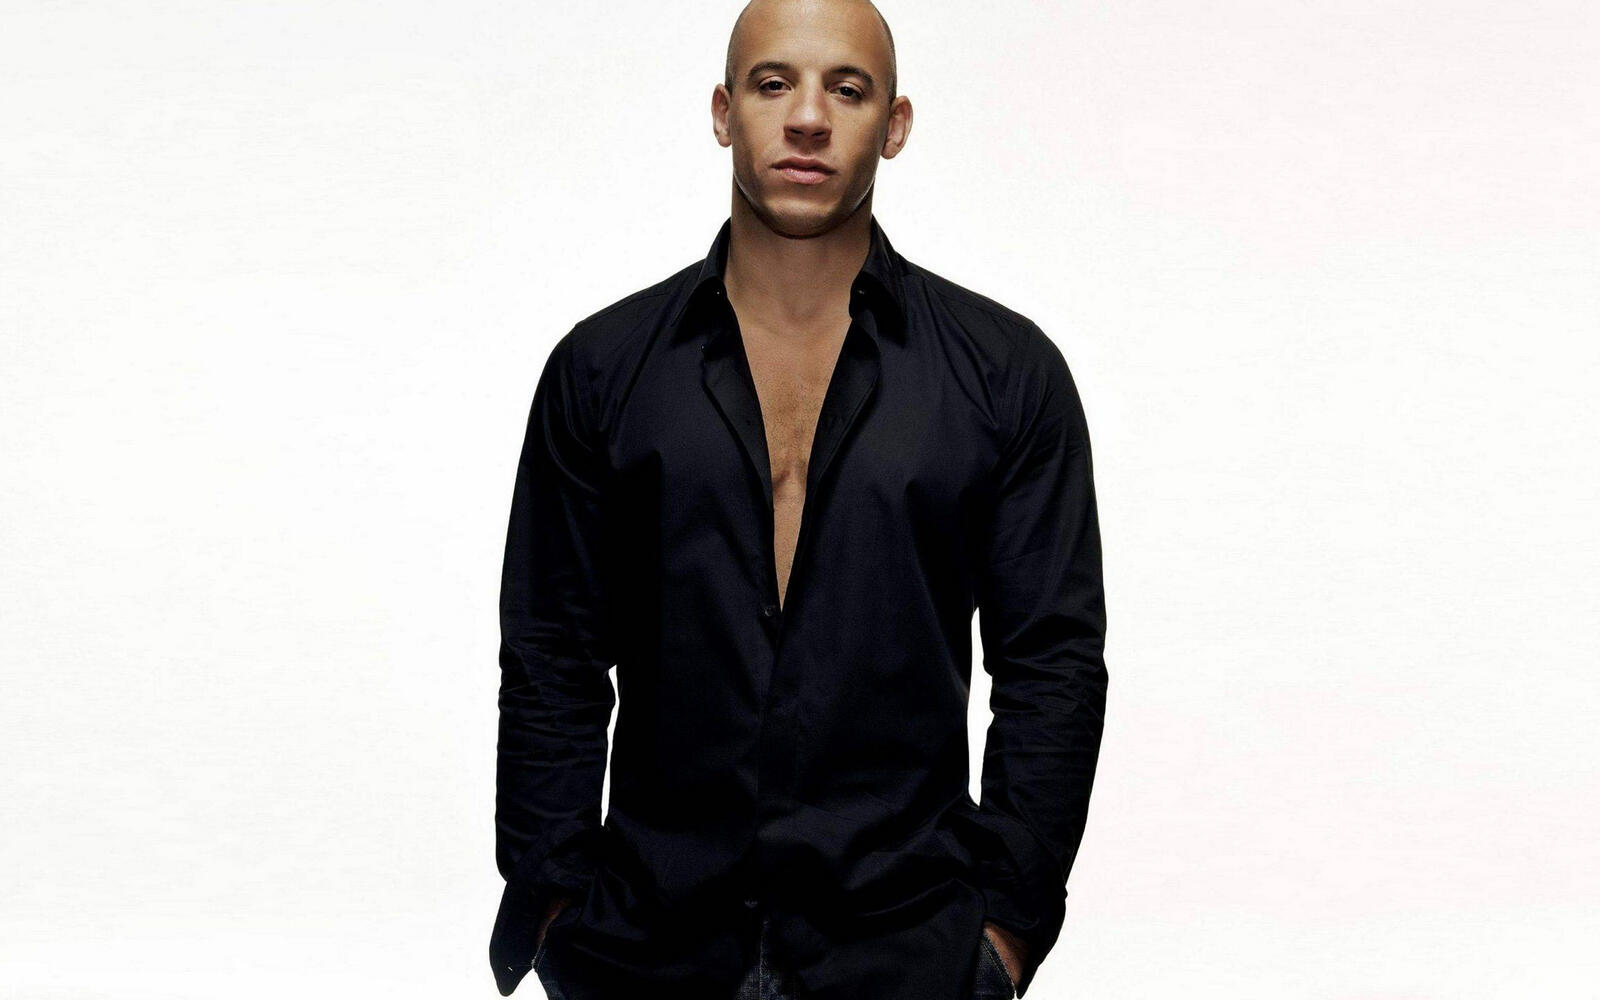 Wallpapers Vin Diesel actor bald on the desktop